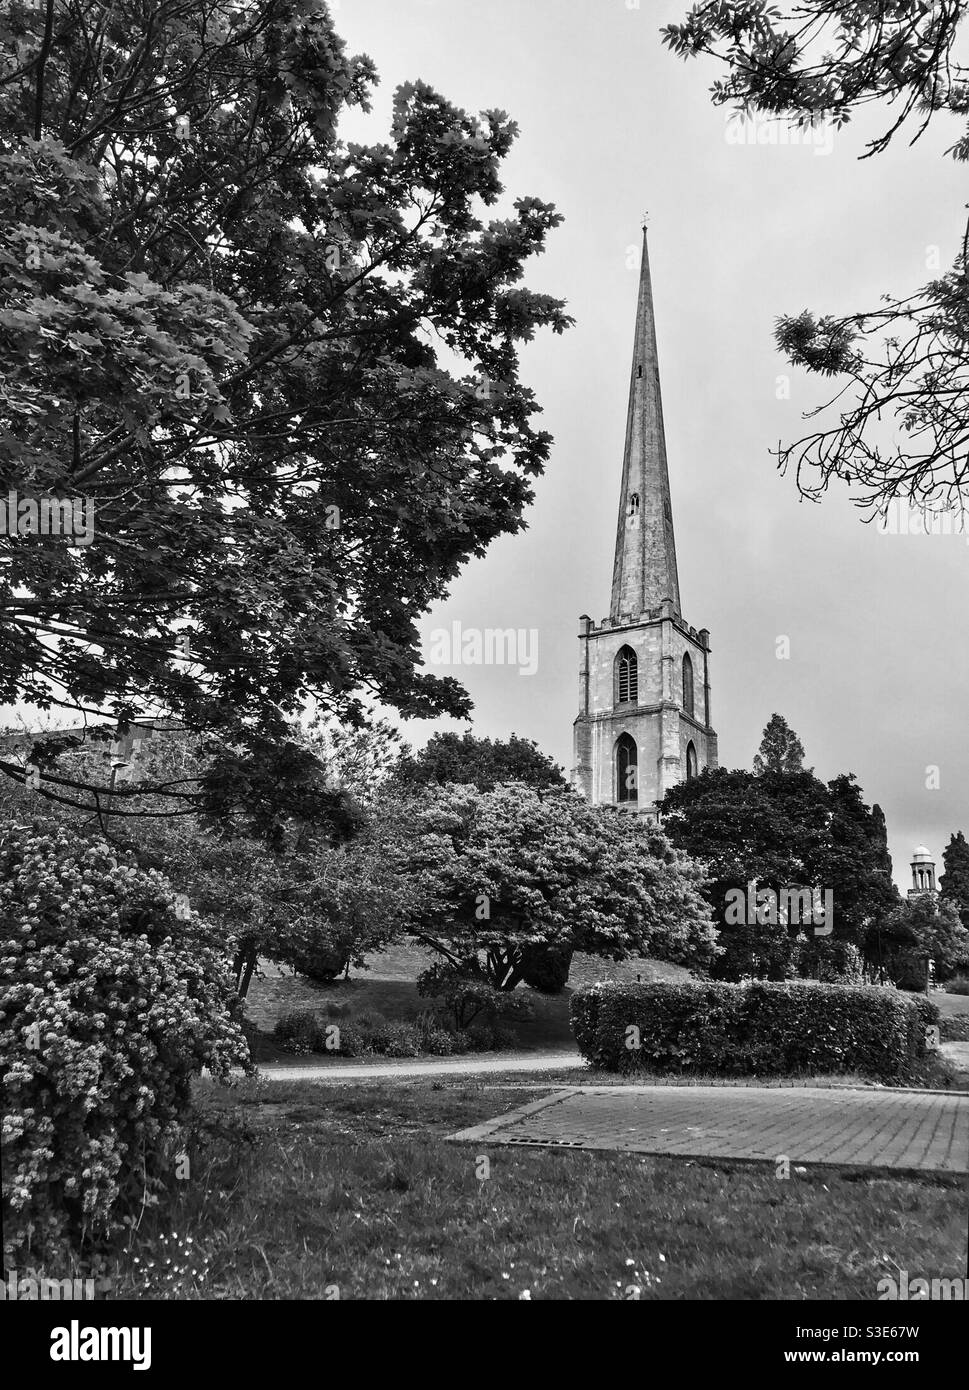 Der 15thC Turm der mittelalterlichen Kirche St. Andreas. Im Hintergrund befindet sich die Kuppel des Worcester Lifelong Learning Centre. Worcester City Centre, Worcestershire, England. Stockfoto